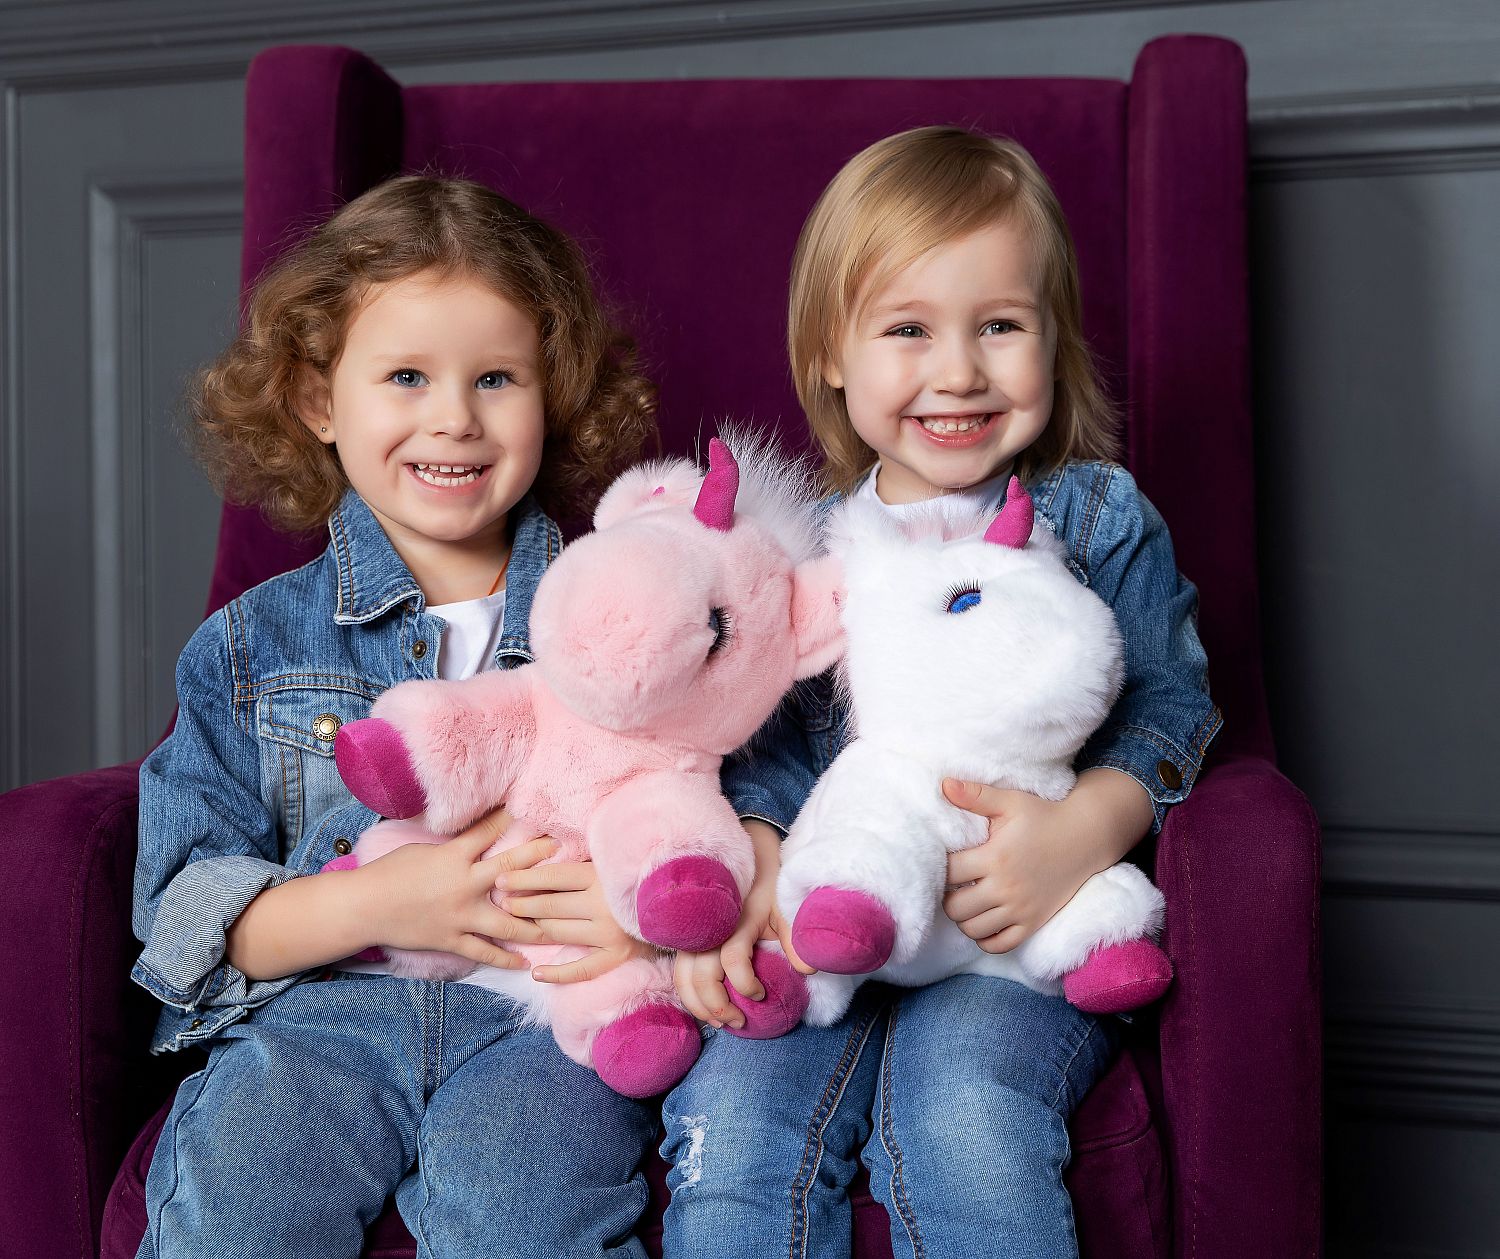 Фото мягкая игрушка единорог из натурального меха нежно розовый с белой гривой Holich Toys в разных ракурса